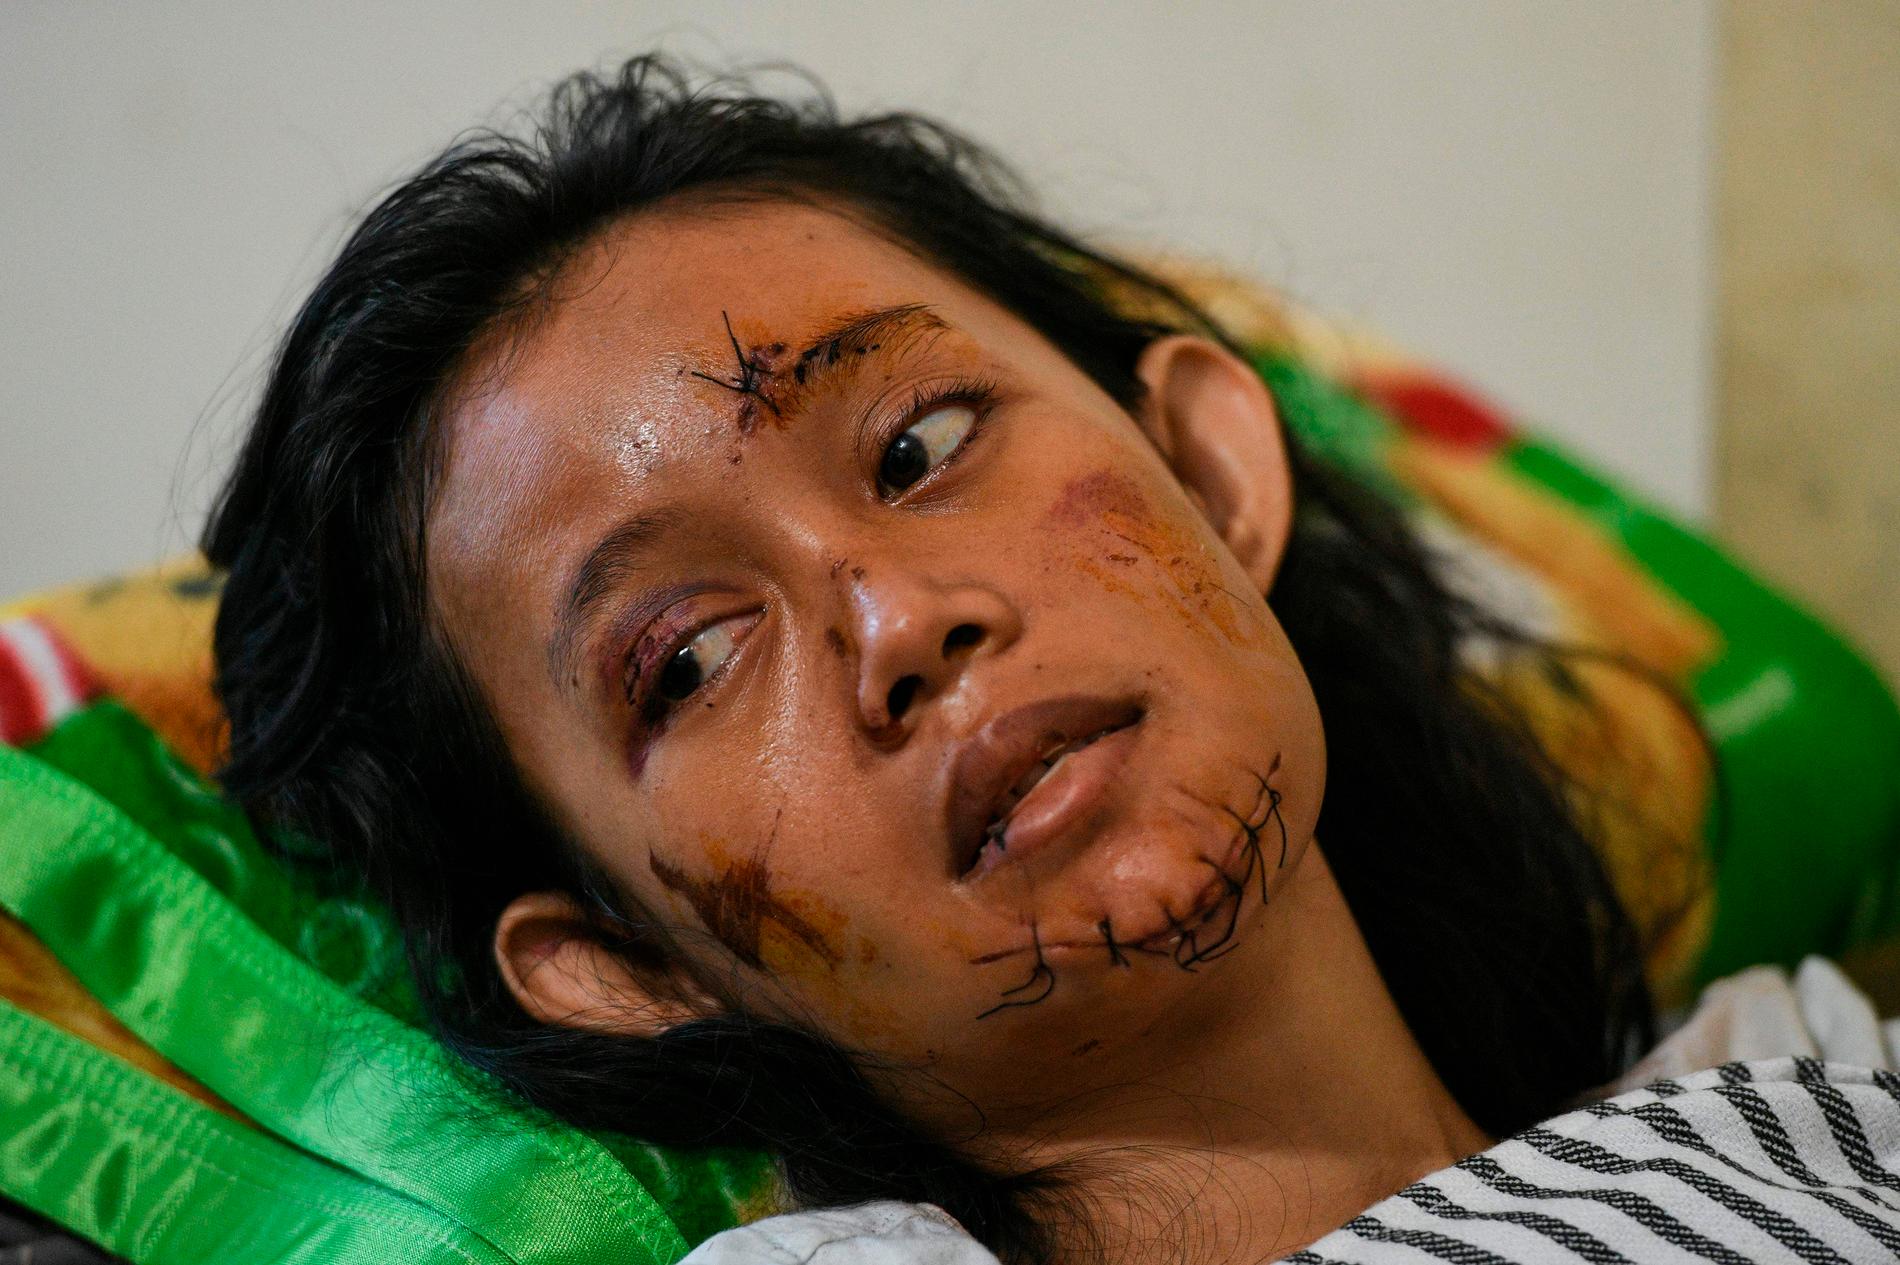 En kvinna som skadats i ansiktet återhämtar sig på sjukhus i Kalianda, Indonesien. 